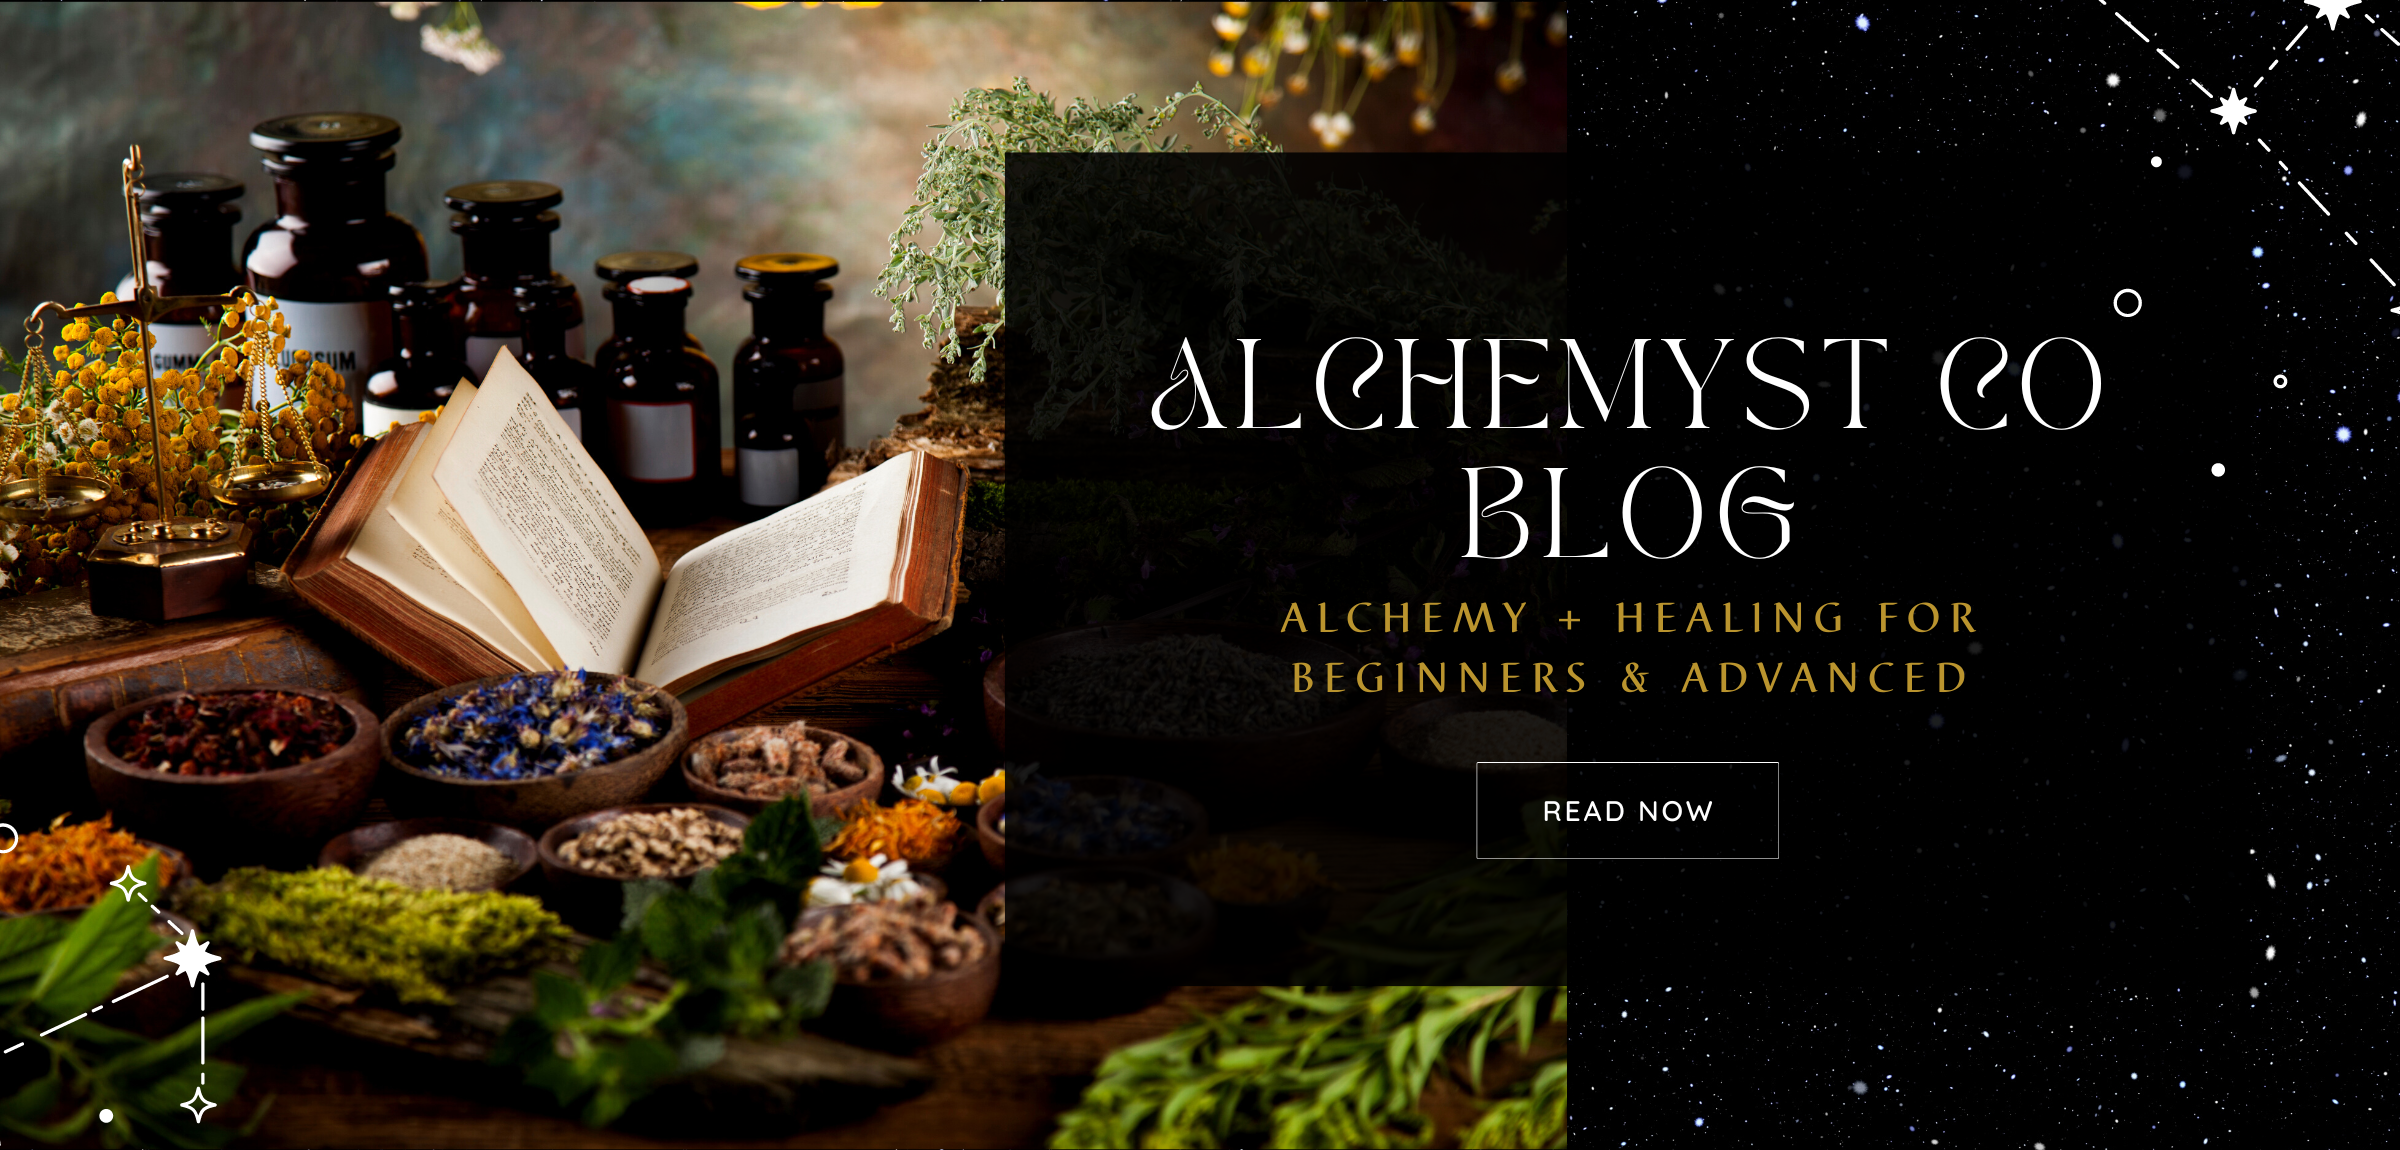 Alchemyst Co Blog